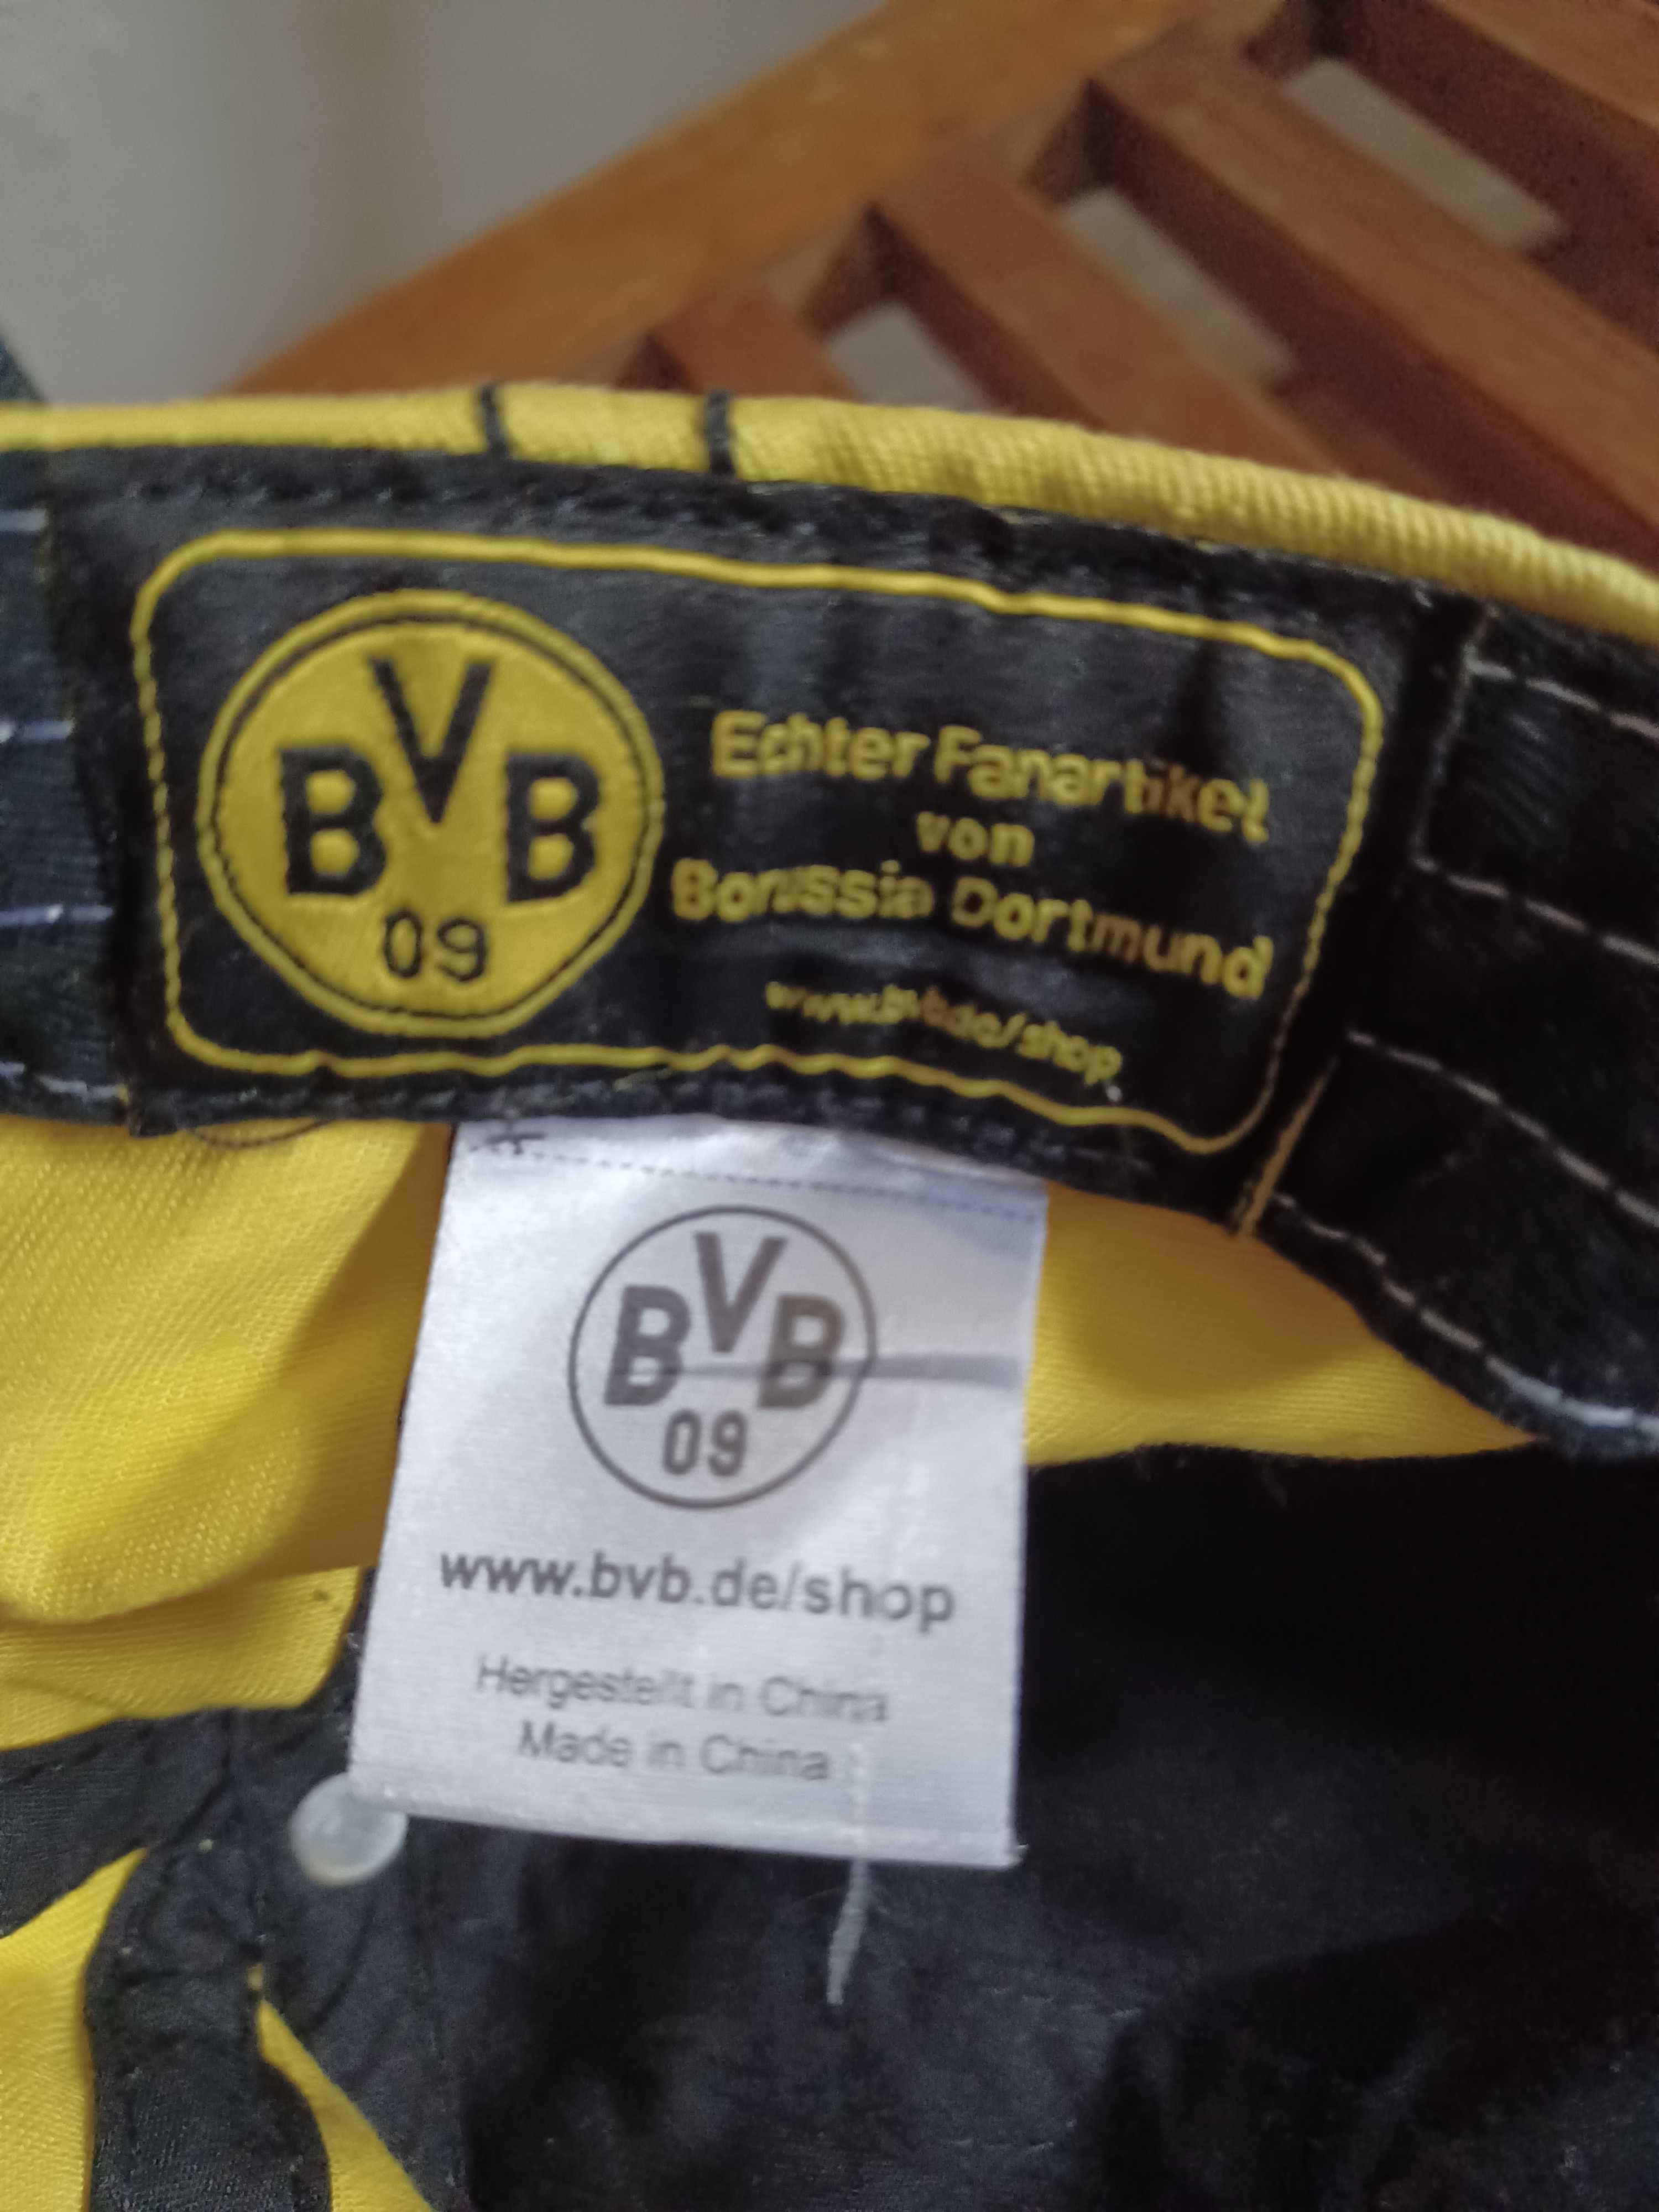 Czapka Borussia Dortmund